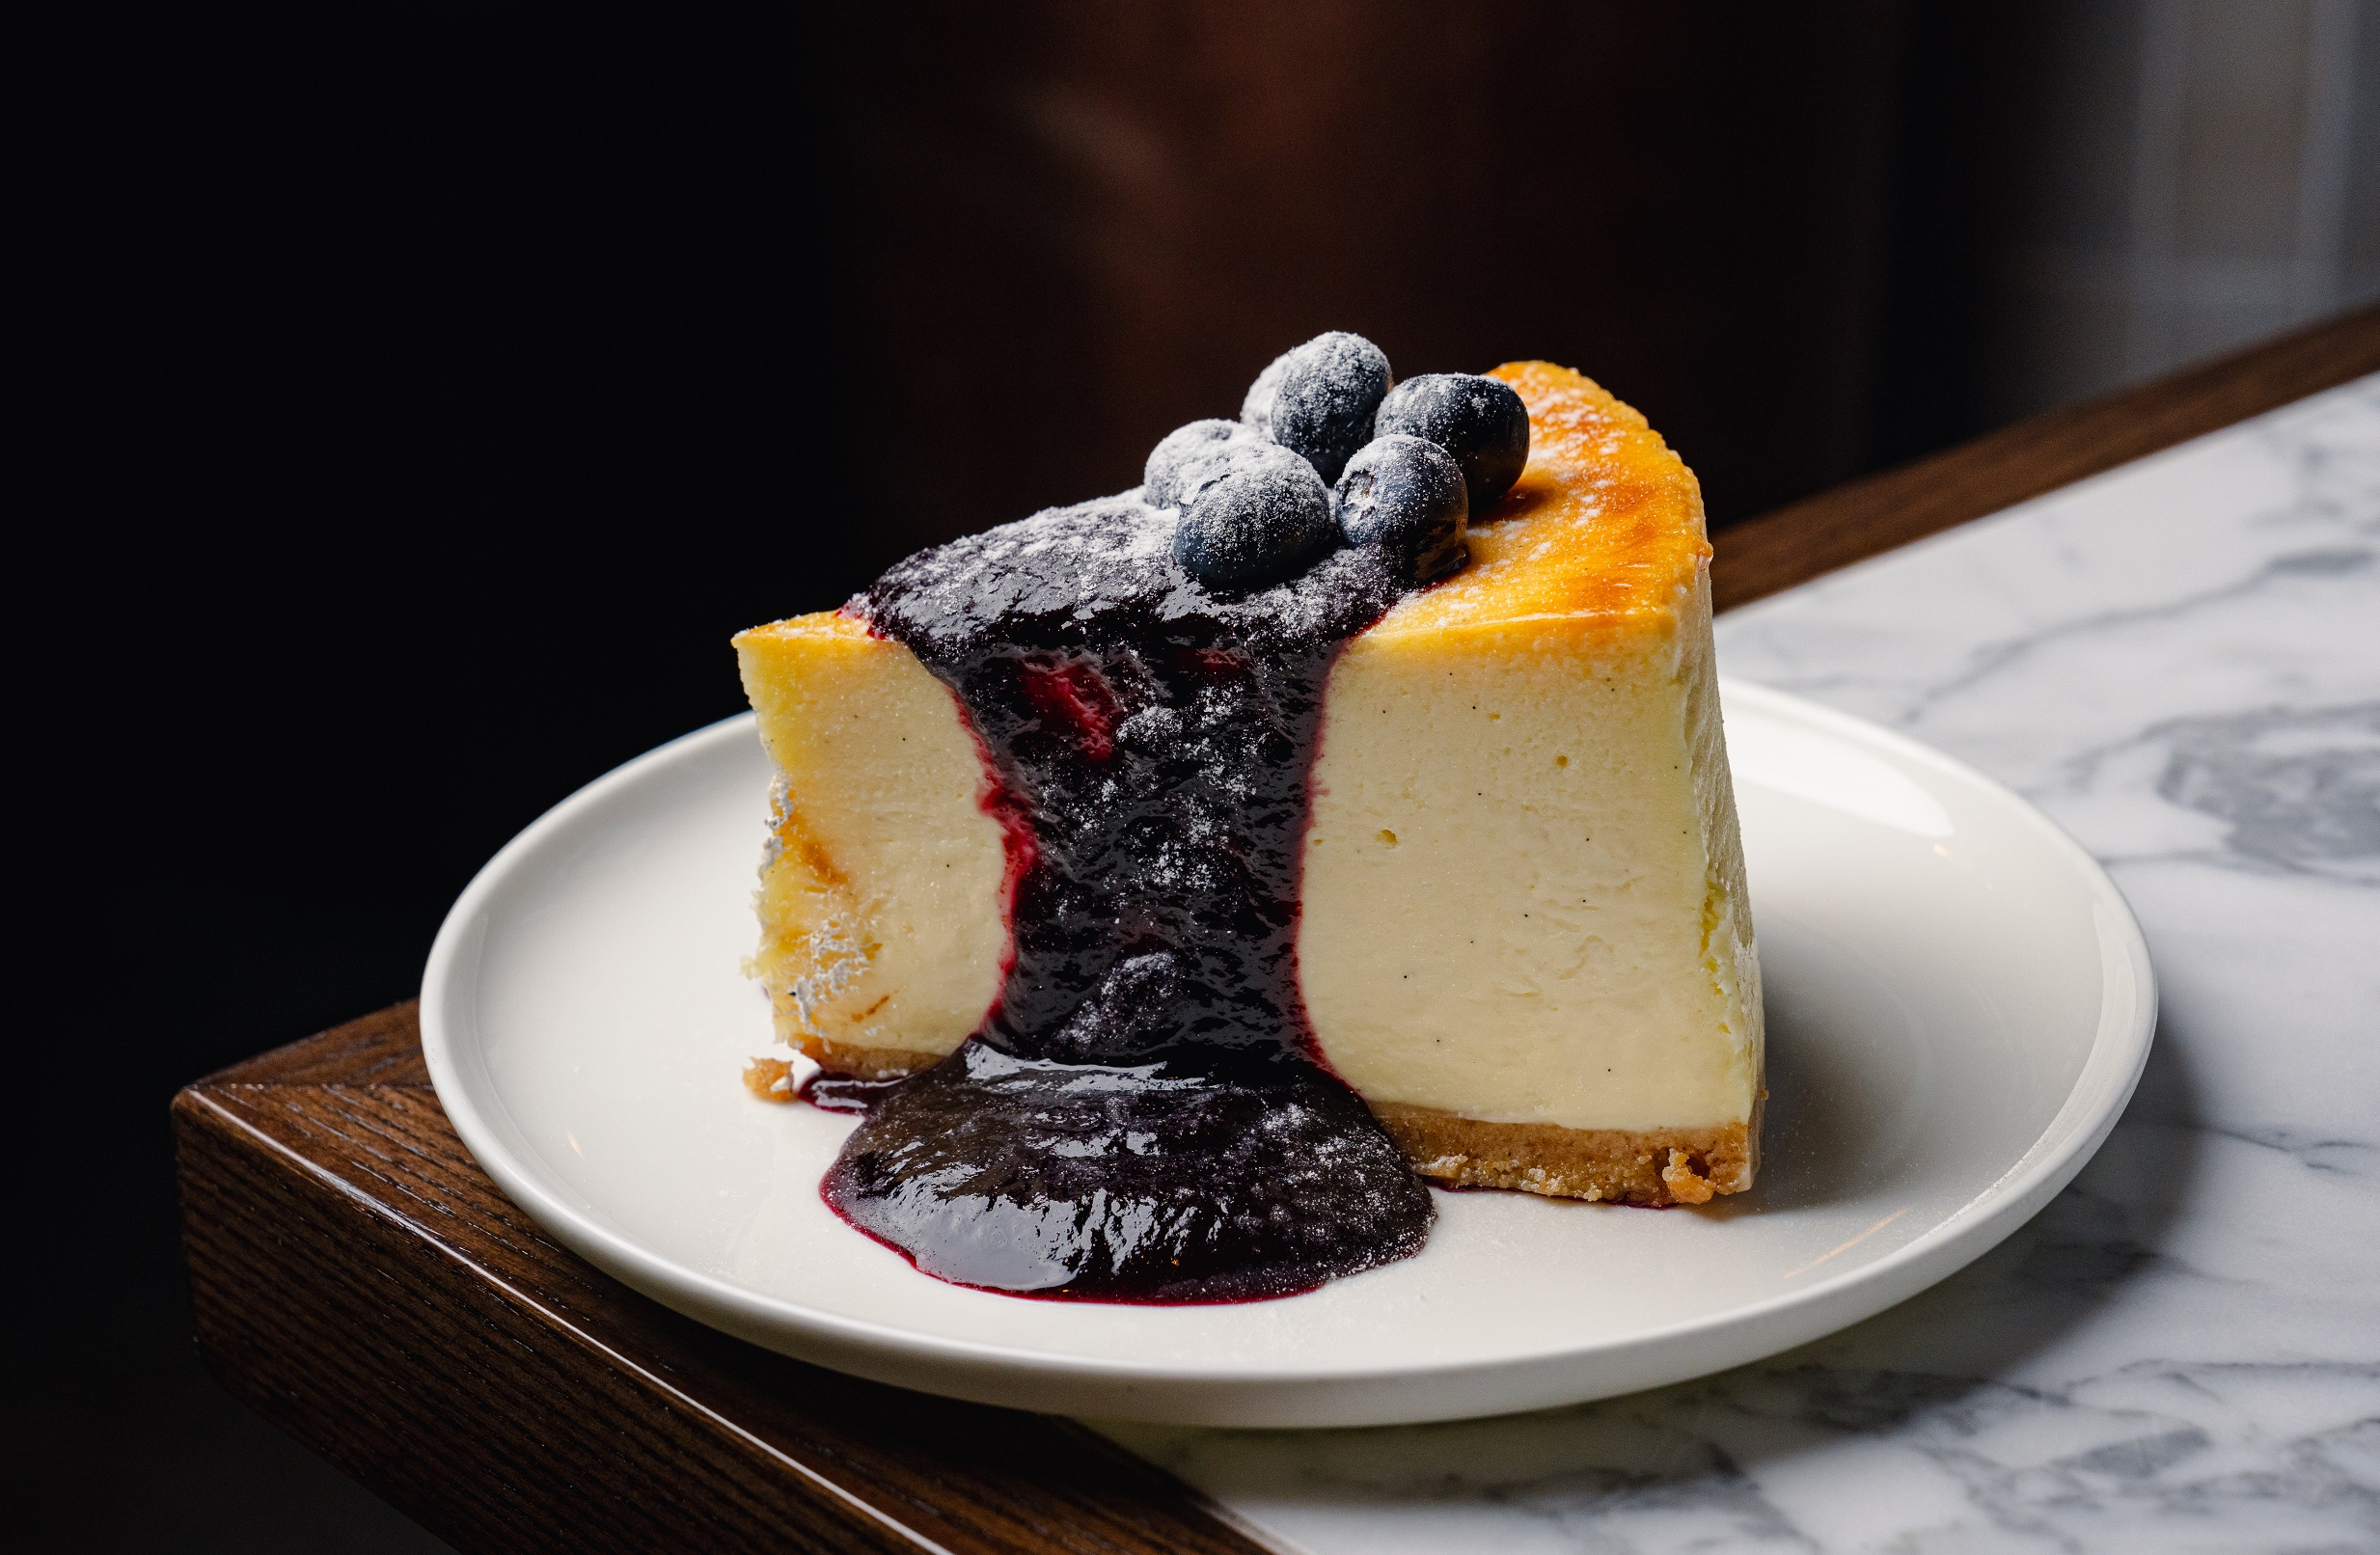 Baked New York Cheesecake